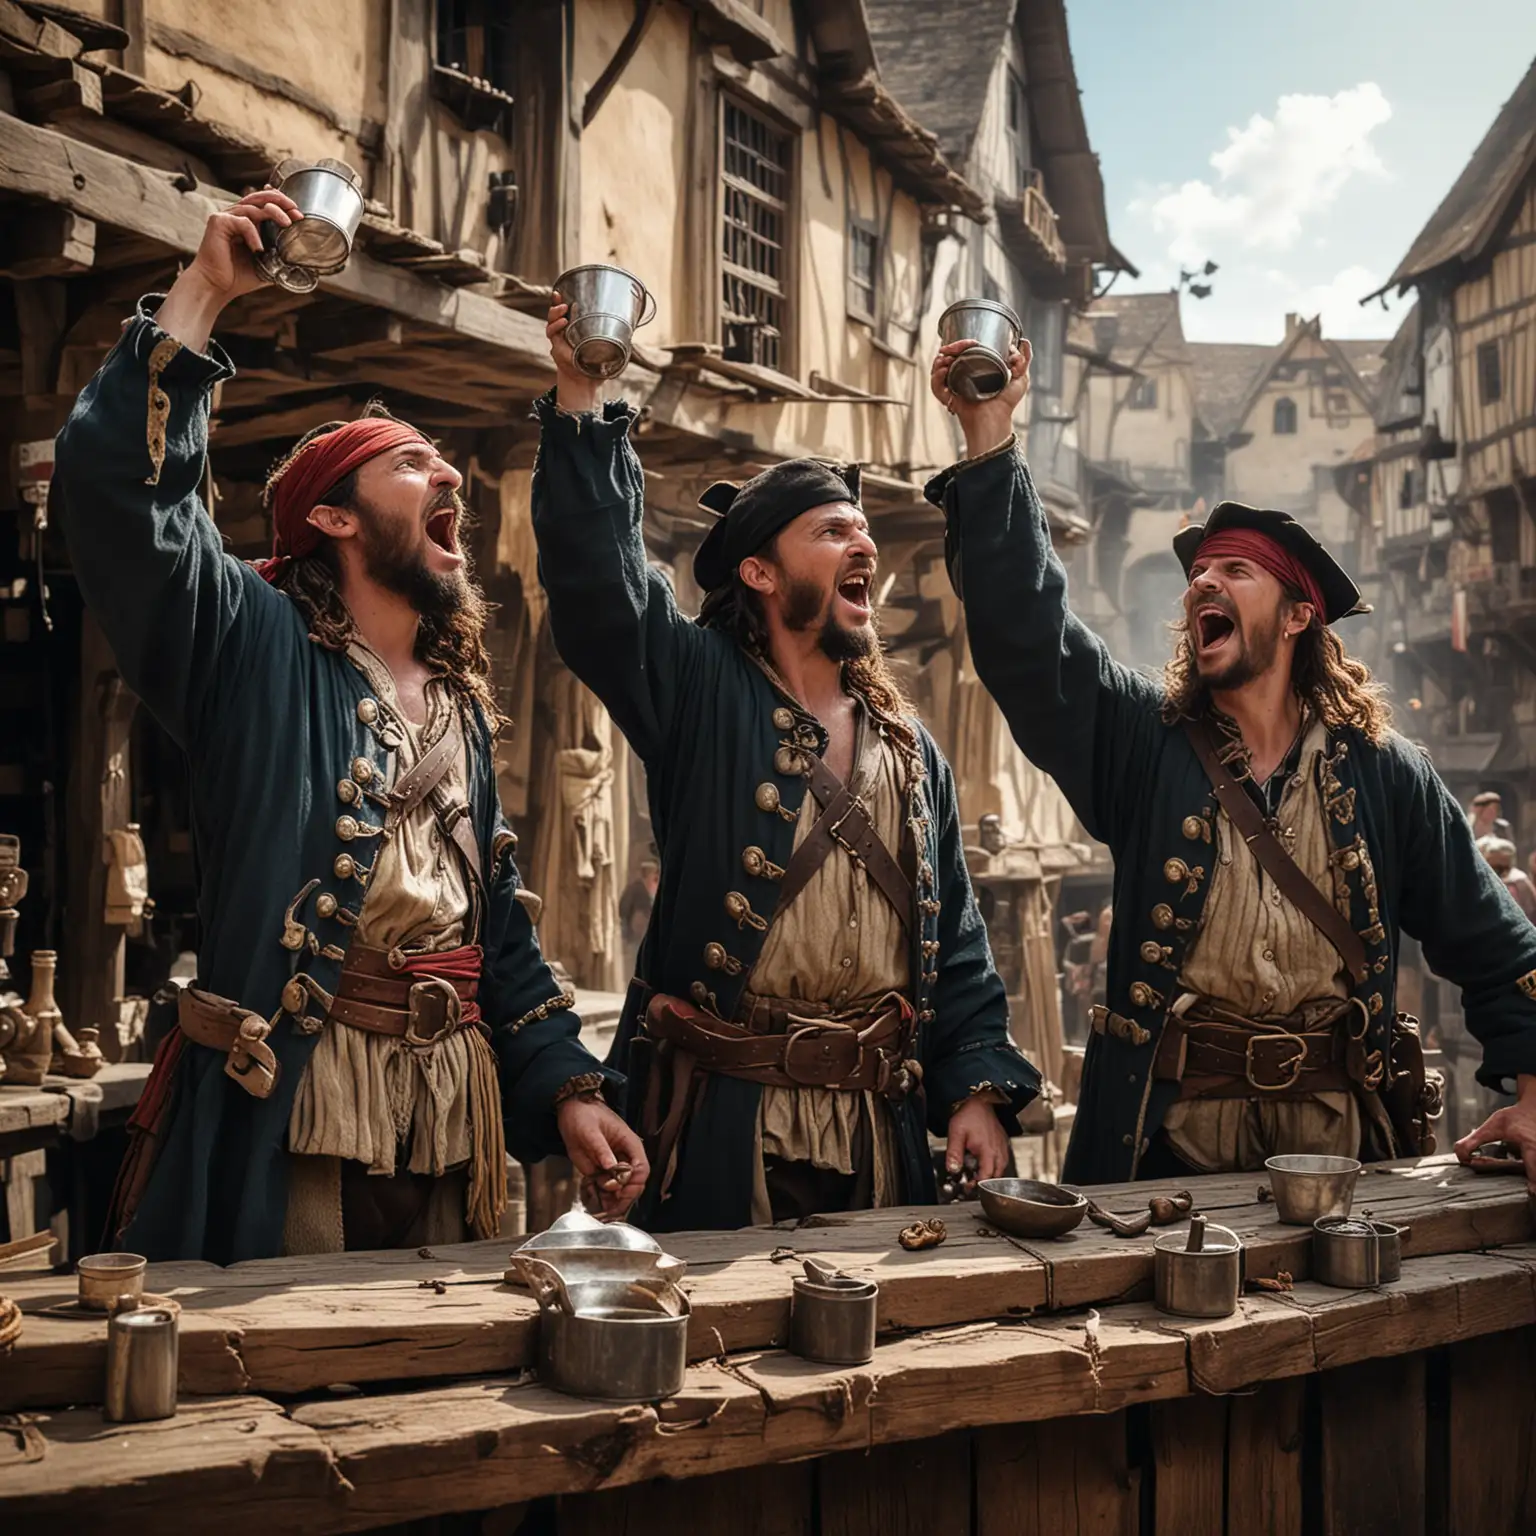 Drei Piraten auf einem Mittelalterlichen Marktplatz heben ihre Becher in die Höhe und grölen.
Eine Piratin. 